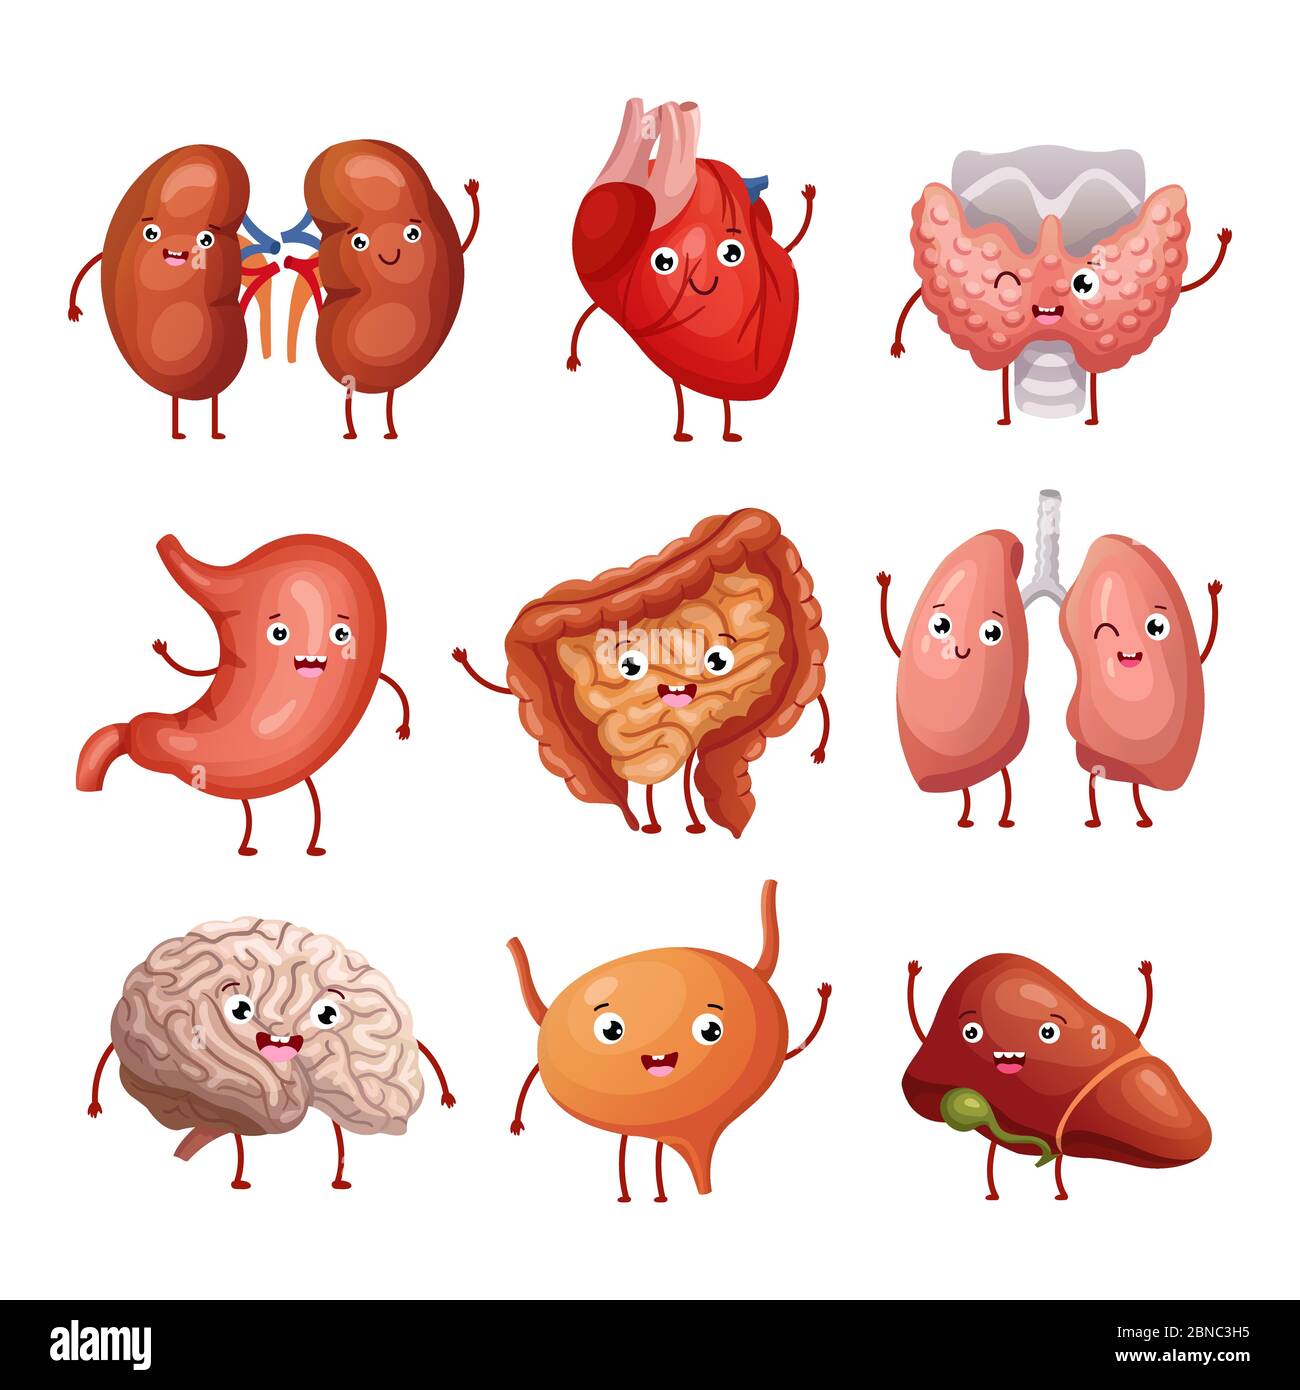 Lindo dibujos animados órganos humanos. Estómago, pulmones y riñones,  cerebro y corazón, hígado. Anatomía de los vectores de los órganos internos  divertidos personajes cerebro y corazón, hígado y órgano interno  ilustración Imagen